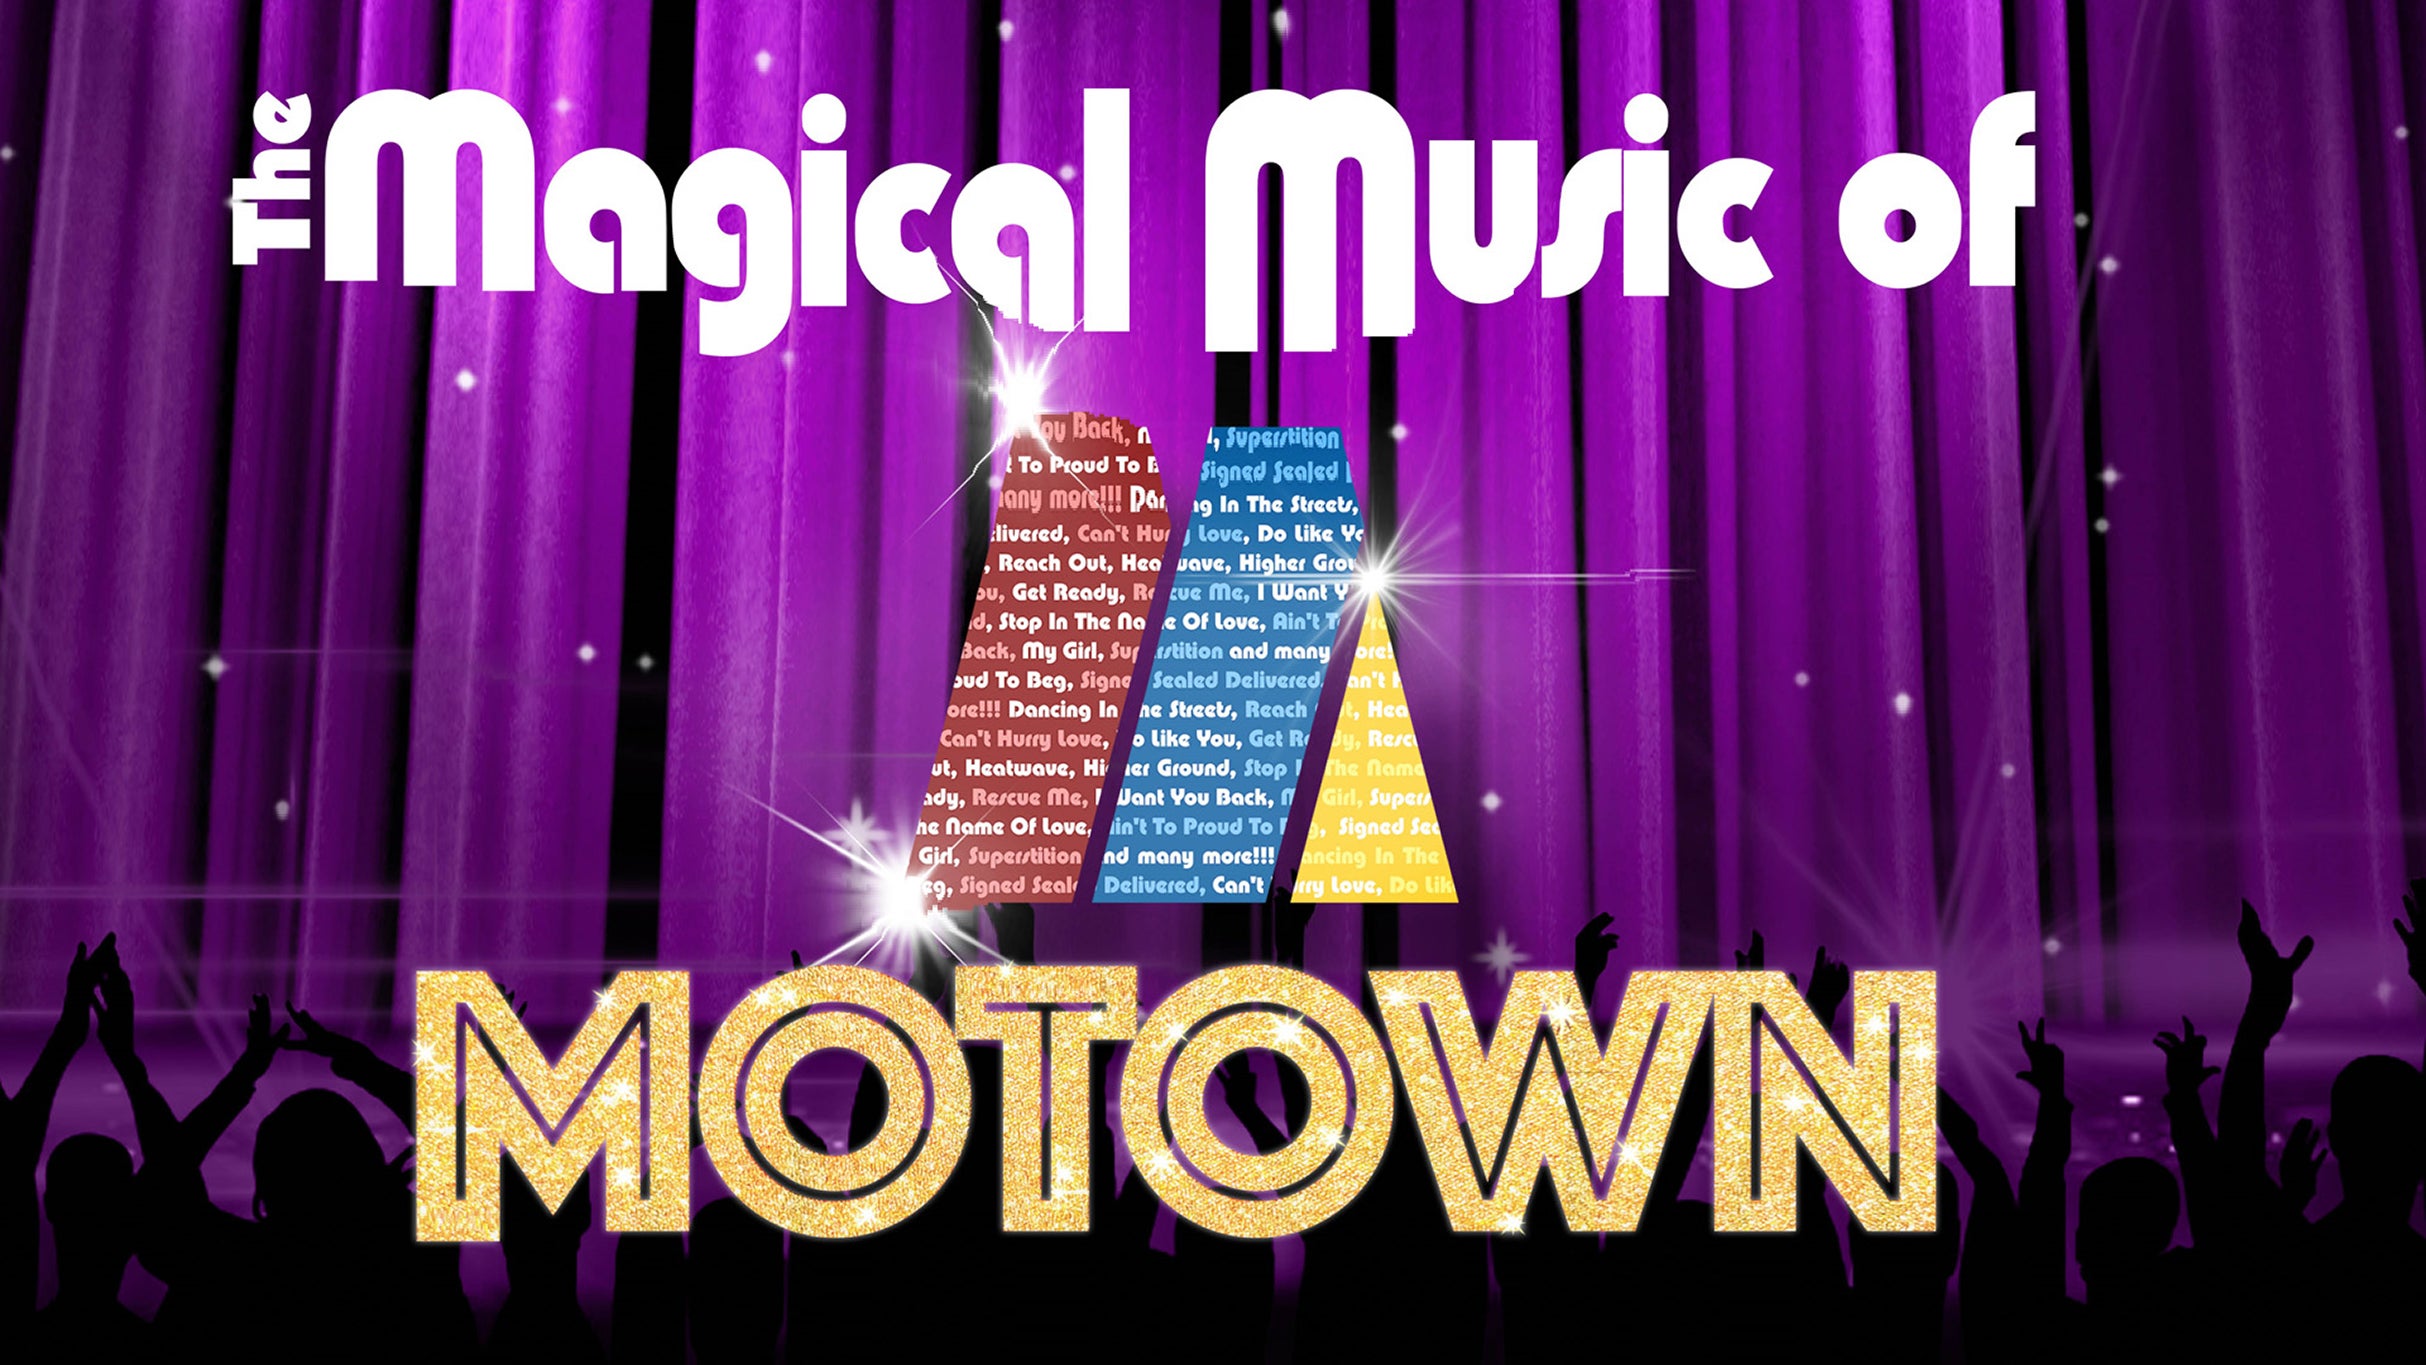 Craig Bodinnar presents The Magical Music of Motown